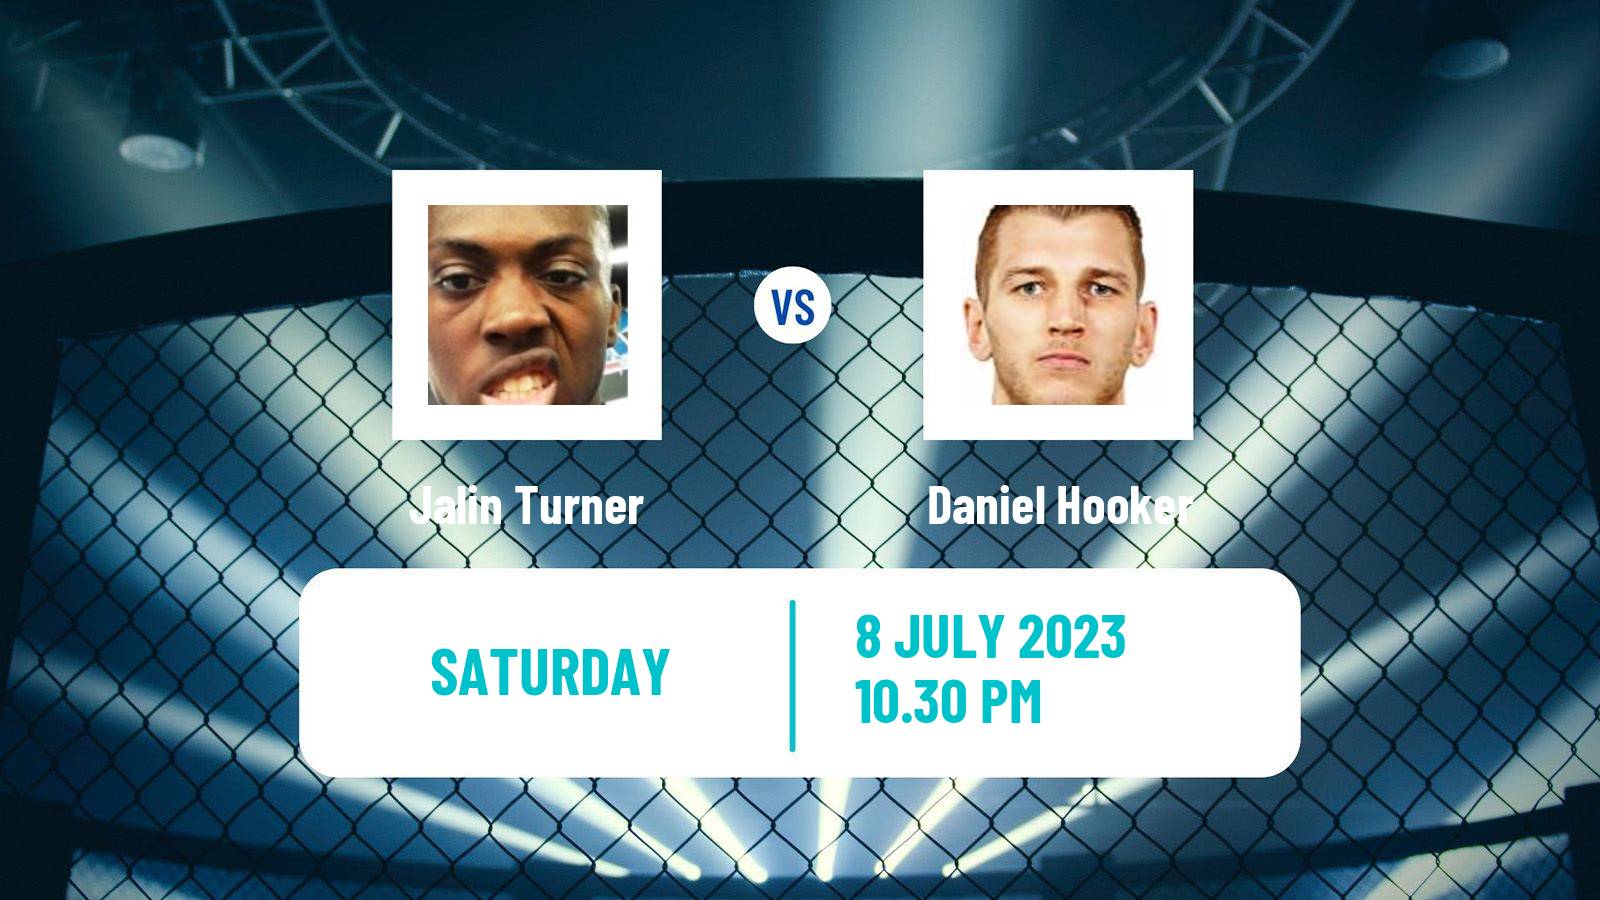 MMA Lightweight UFC Men Jalin Turner - Daniel Hooker